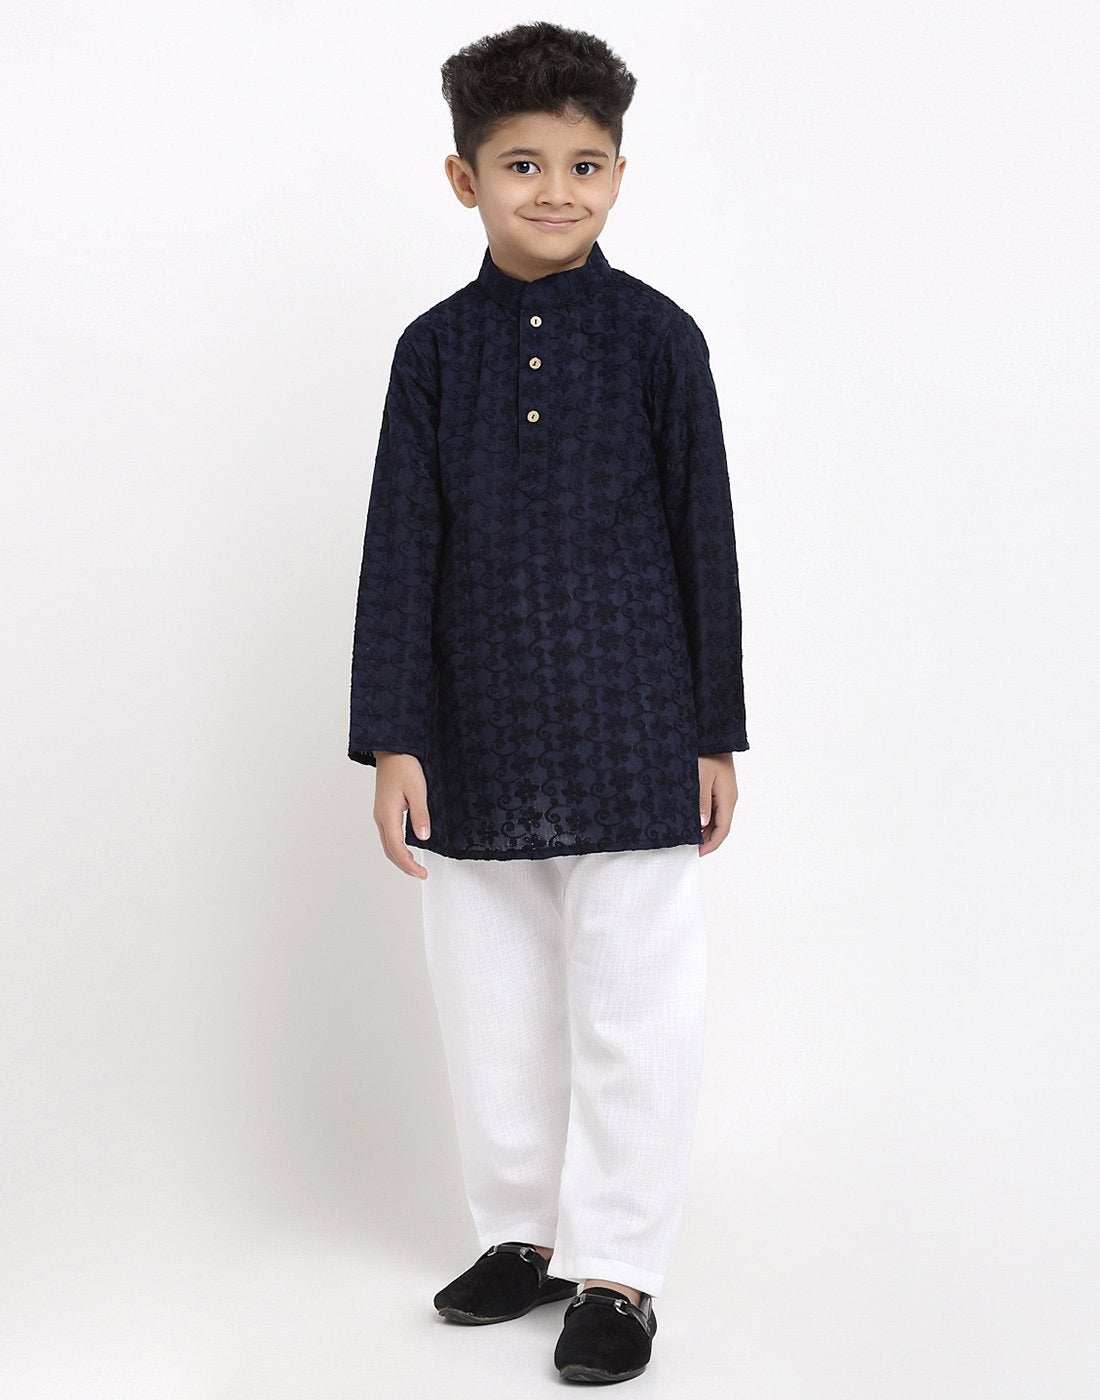 Lucknowi Chikankari Cotton Kurta Pajama Set For Boys/Kids By Treemoda|Navy Blue| Kurta Pajama Set